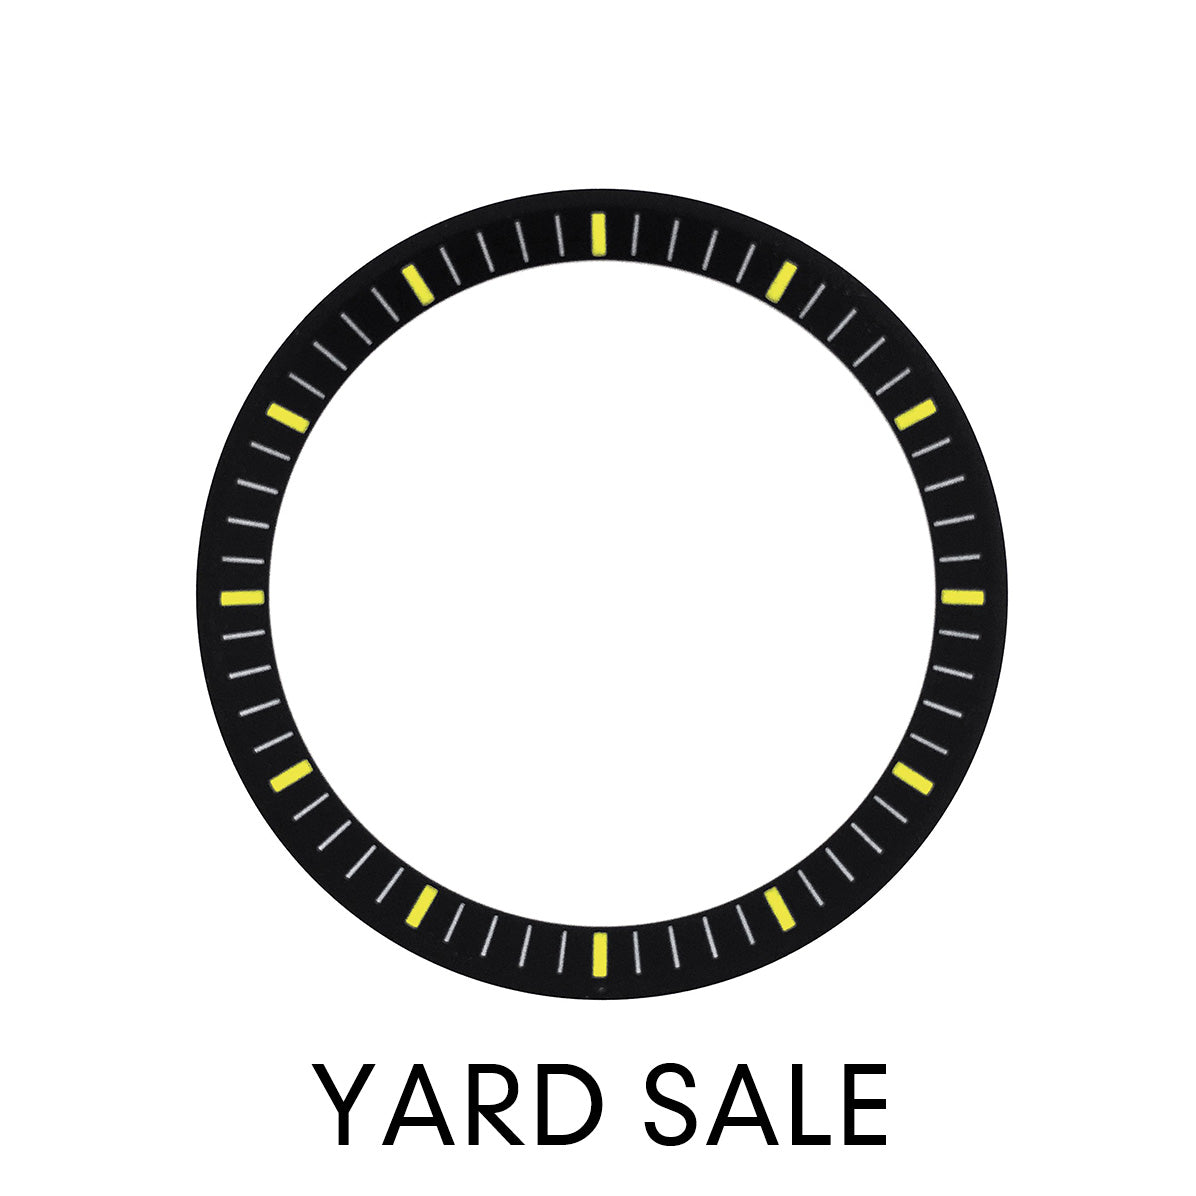 YARD SALE - C.R. - Urchin - Matt Black w Markers (Yellow)